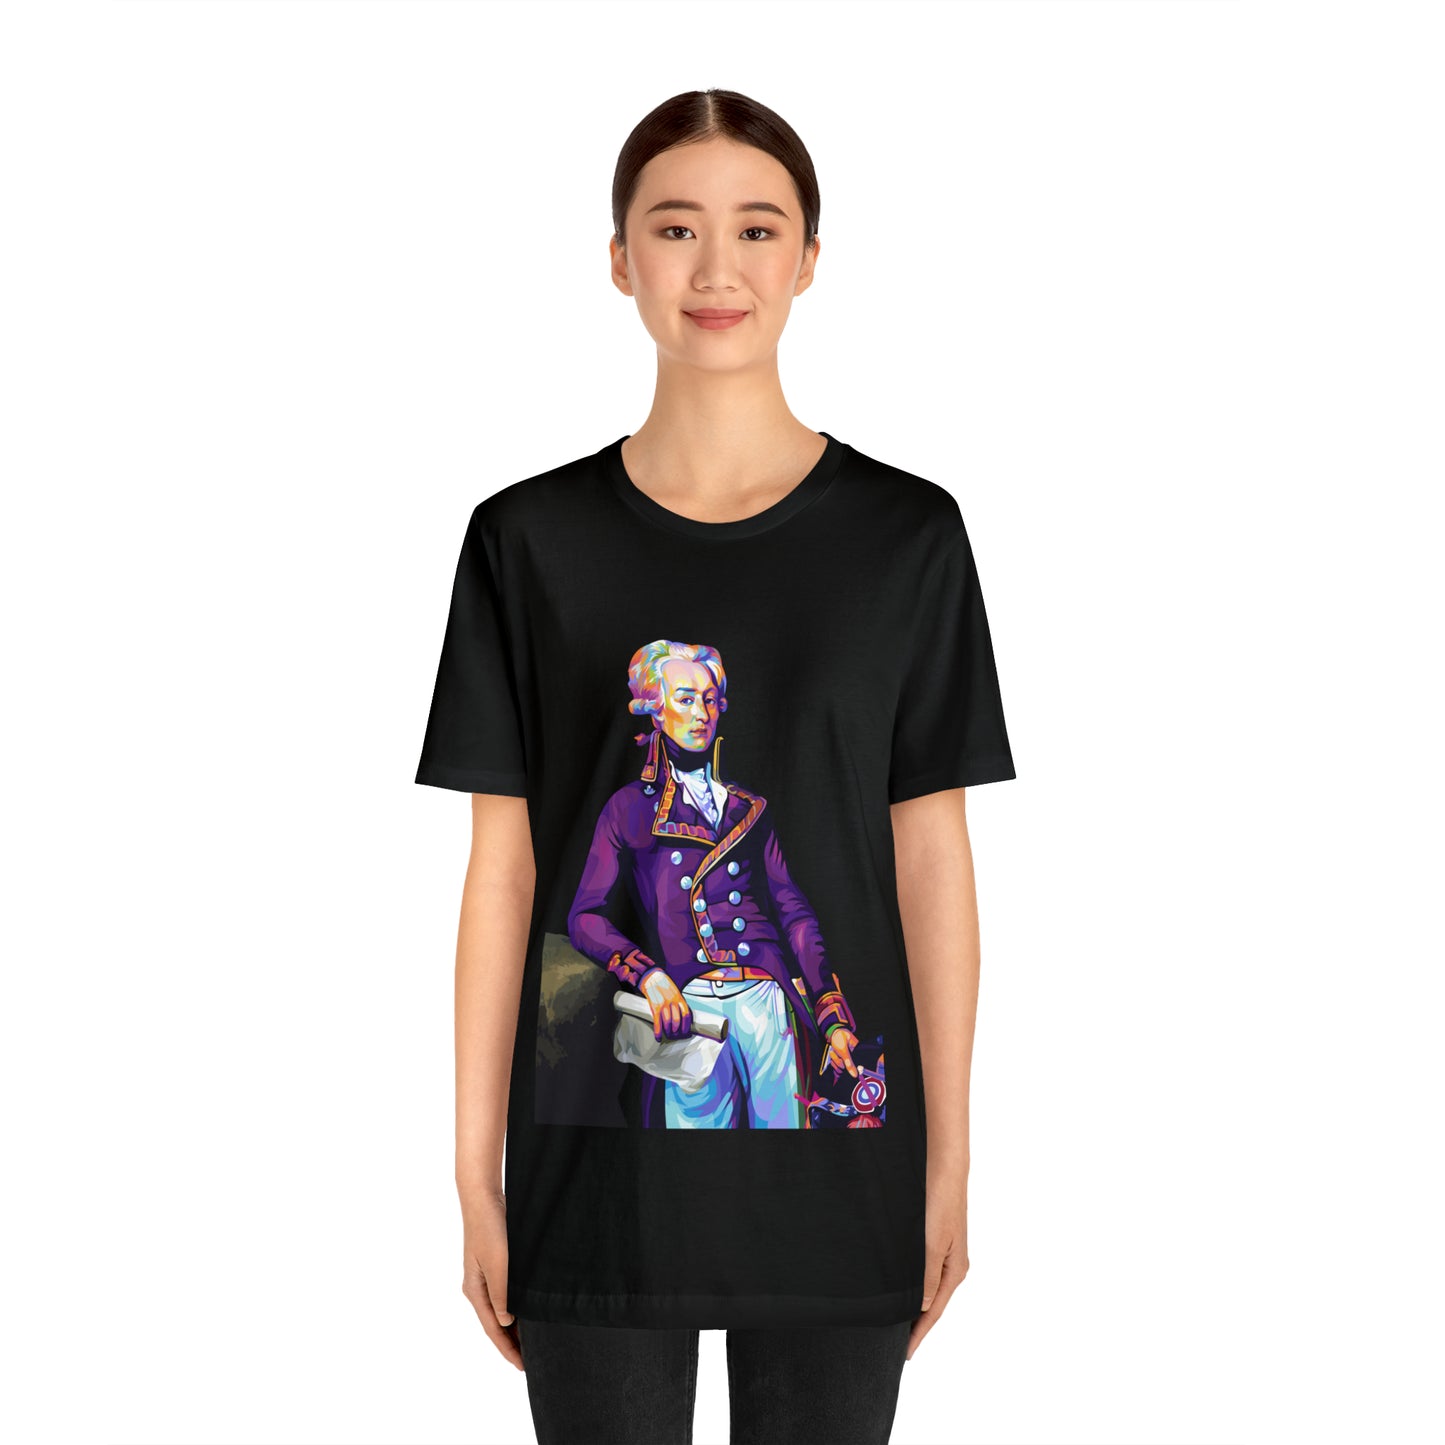 Marquis de Lafayette Pop Art portrait on a tshirtMarquis de Lafayette Pop Art portrait on a tshirt